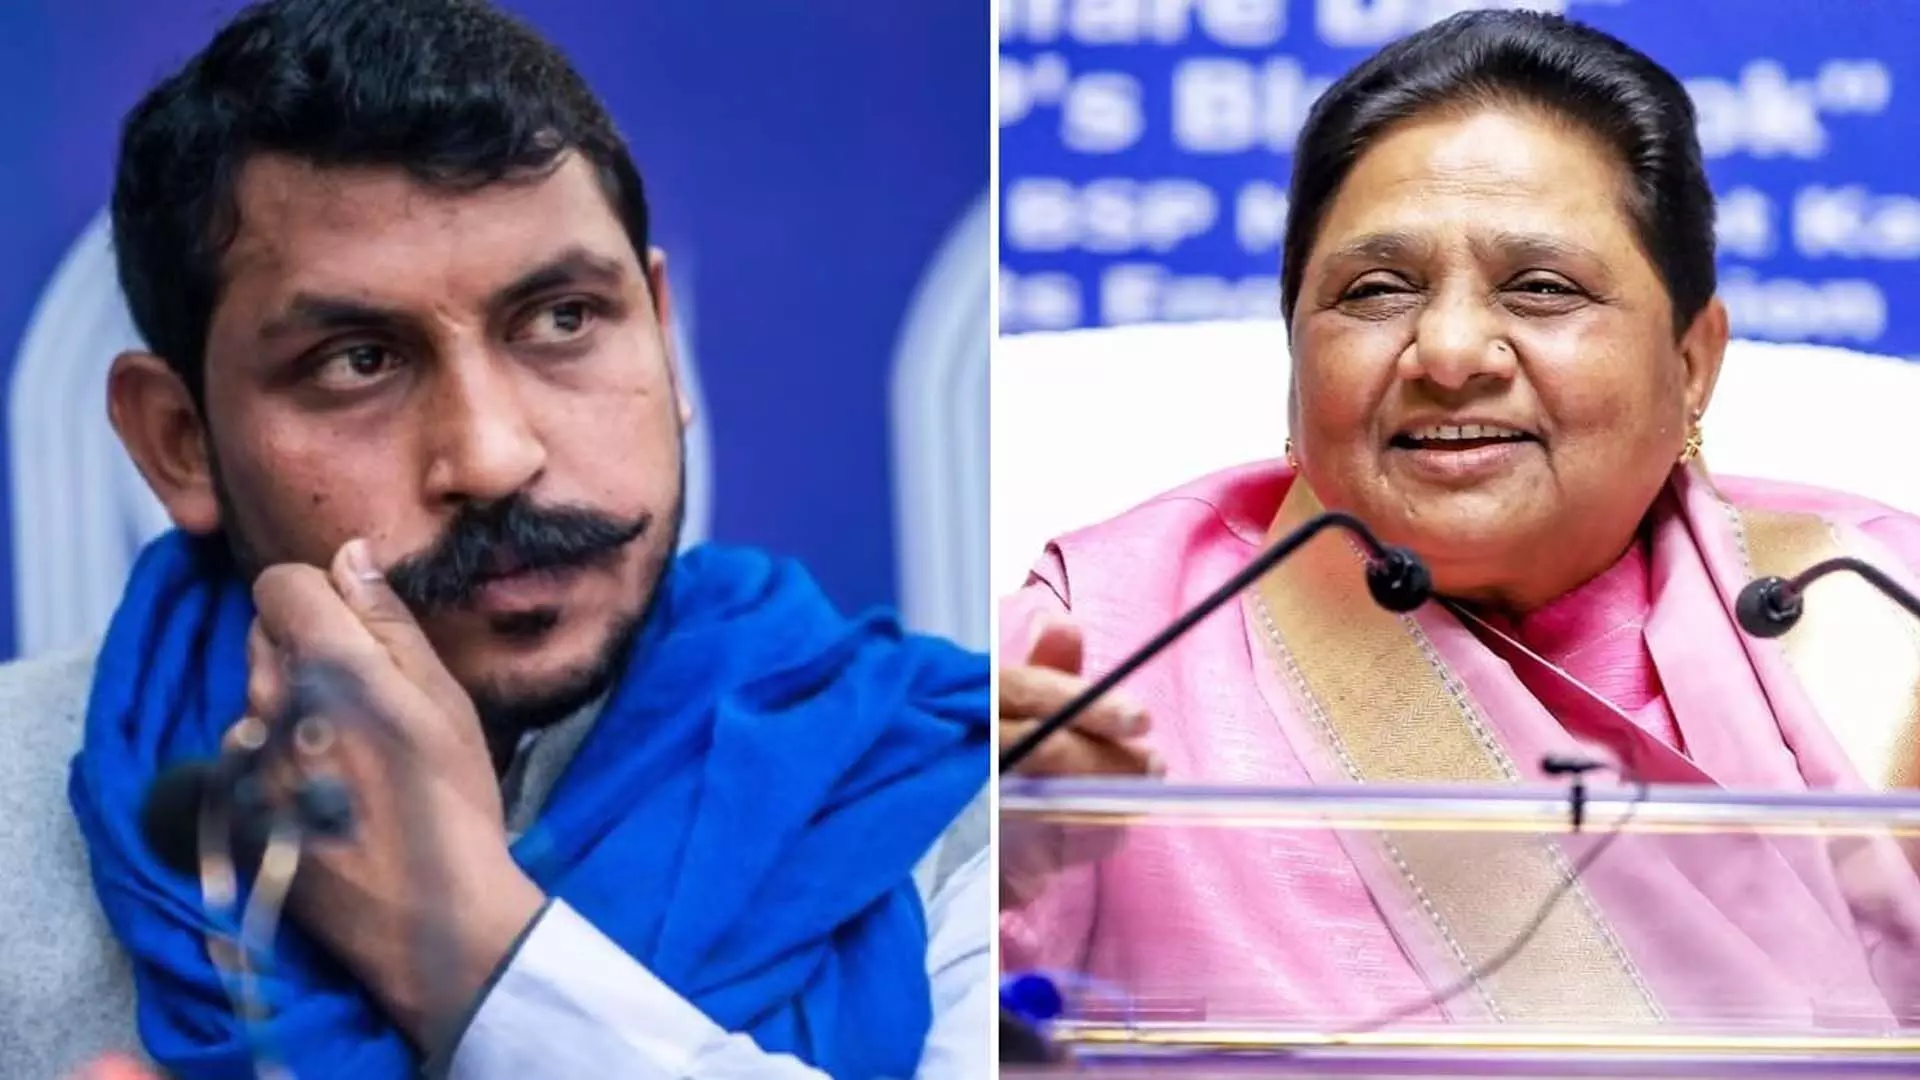 UP Lok Sabha Elections: मायावती जीत हासिल करने में विफल रहीं, जबकि चंद्रशेखर आज़ाद ने नगीना सीट जीती